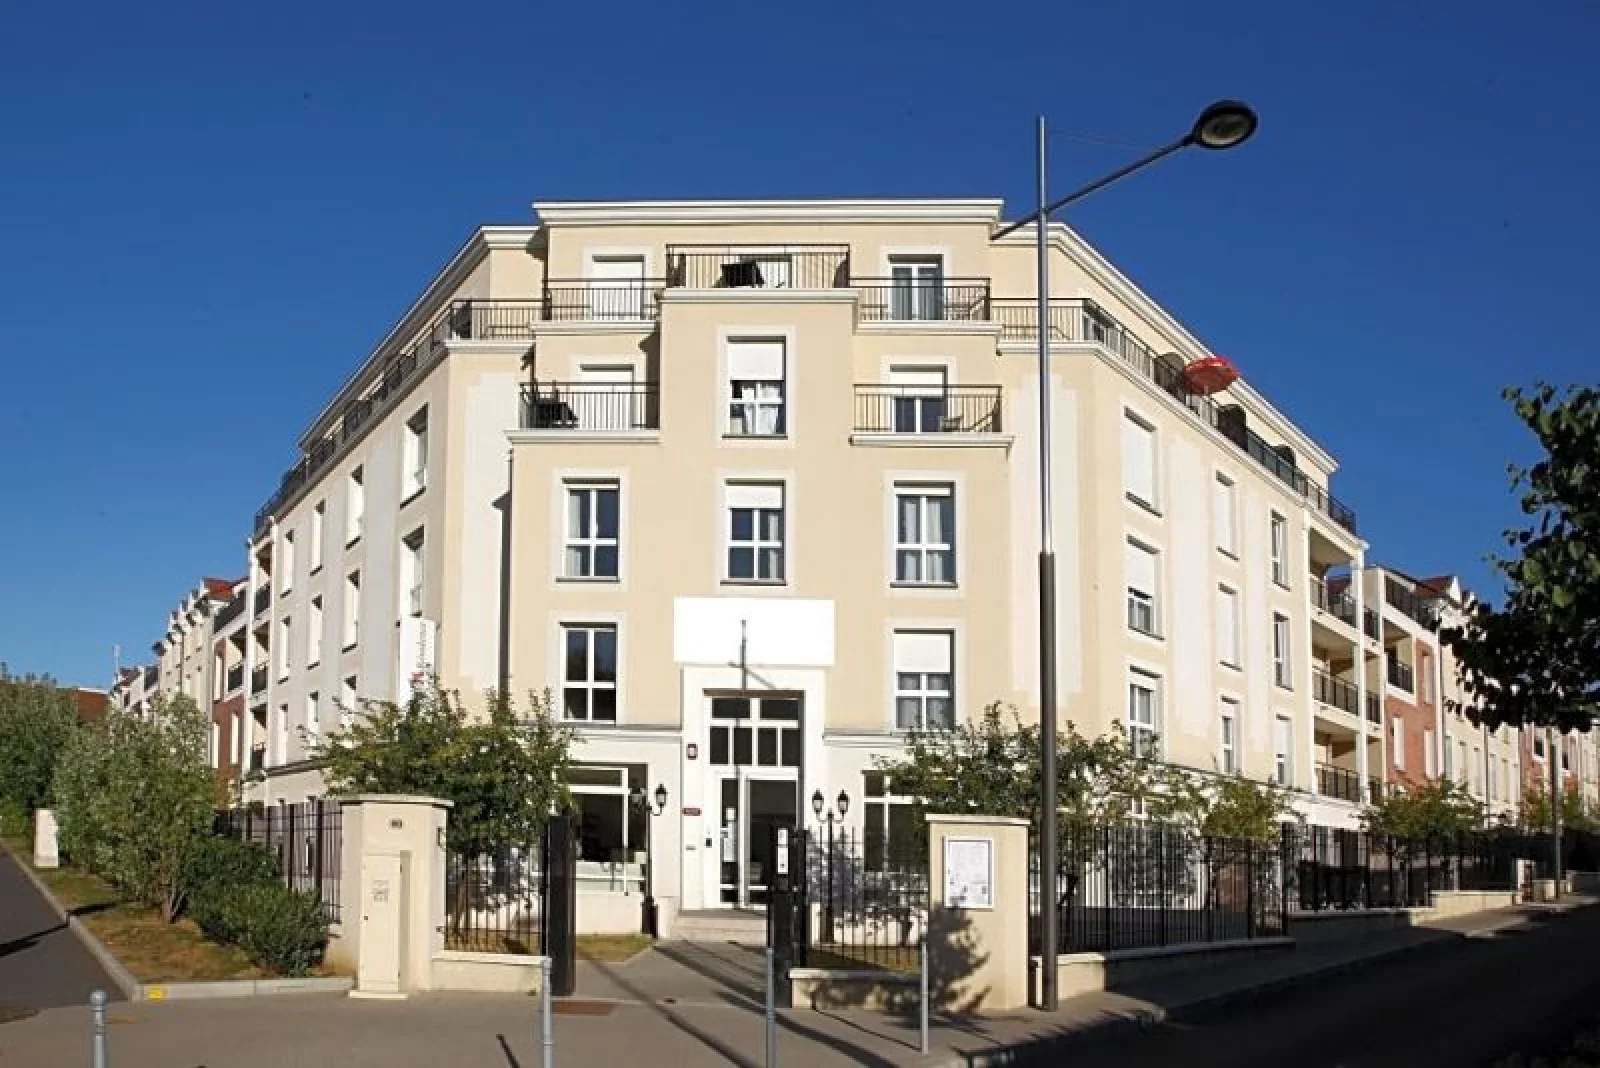 Location appartement meublé duplex 4 pièces 93m² (Paris est - Bry s/ Marne)